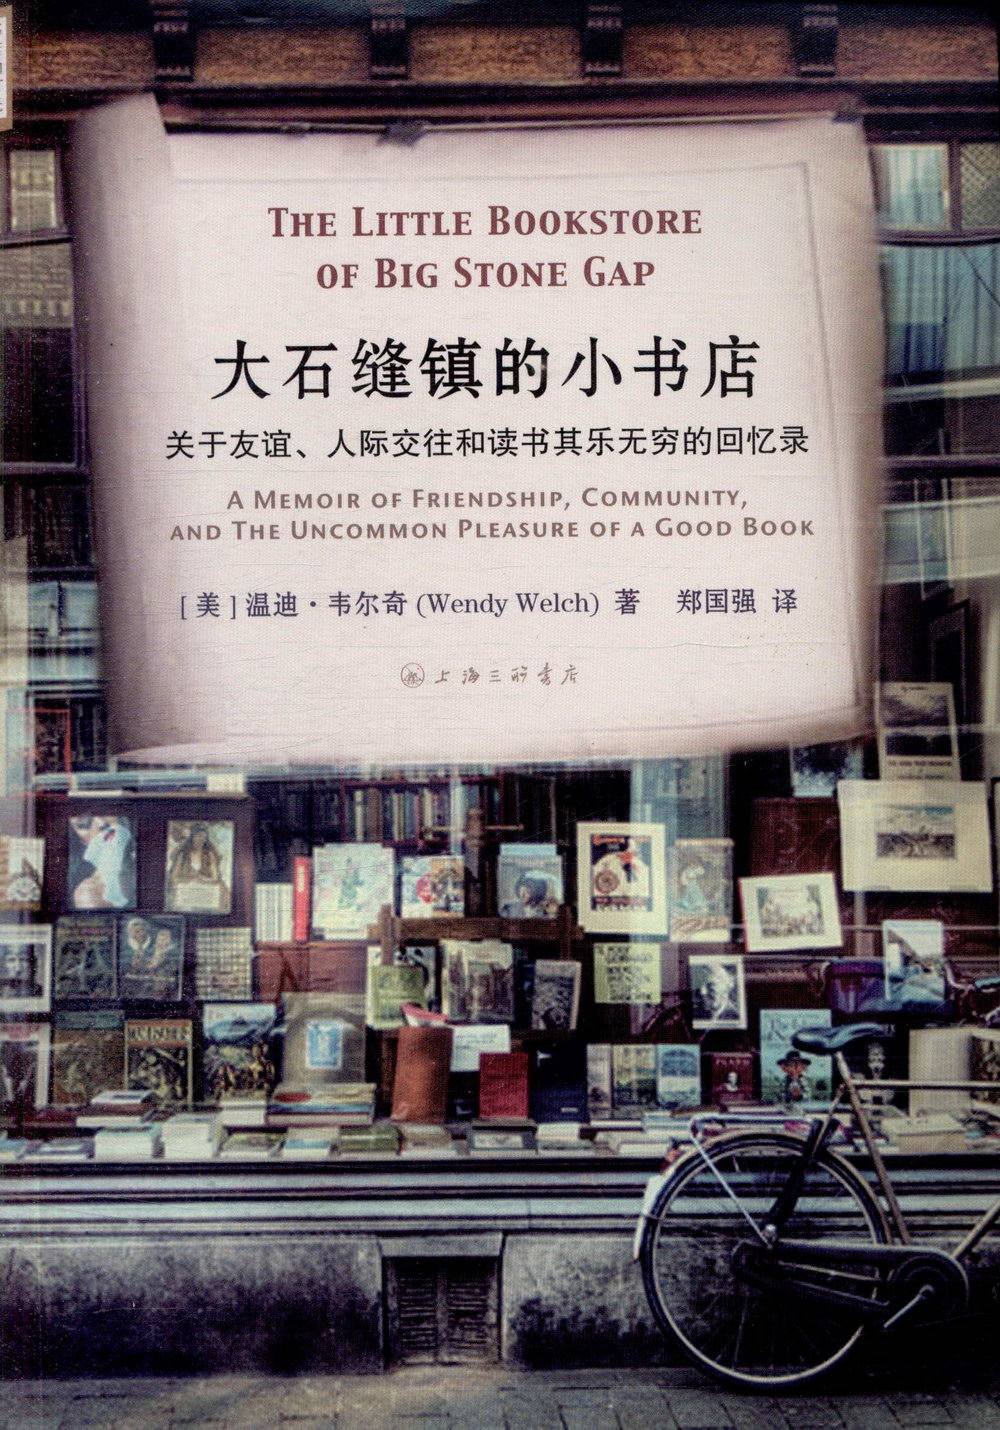 大石縫鎮的小書店：關於友誼、人際交往和讀書其樂無窮的回憶錄